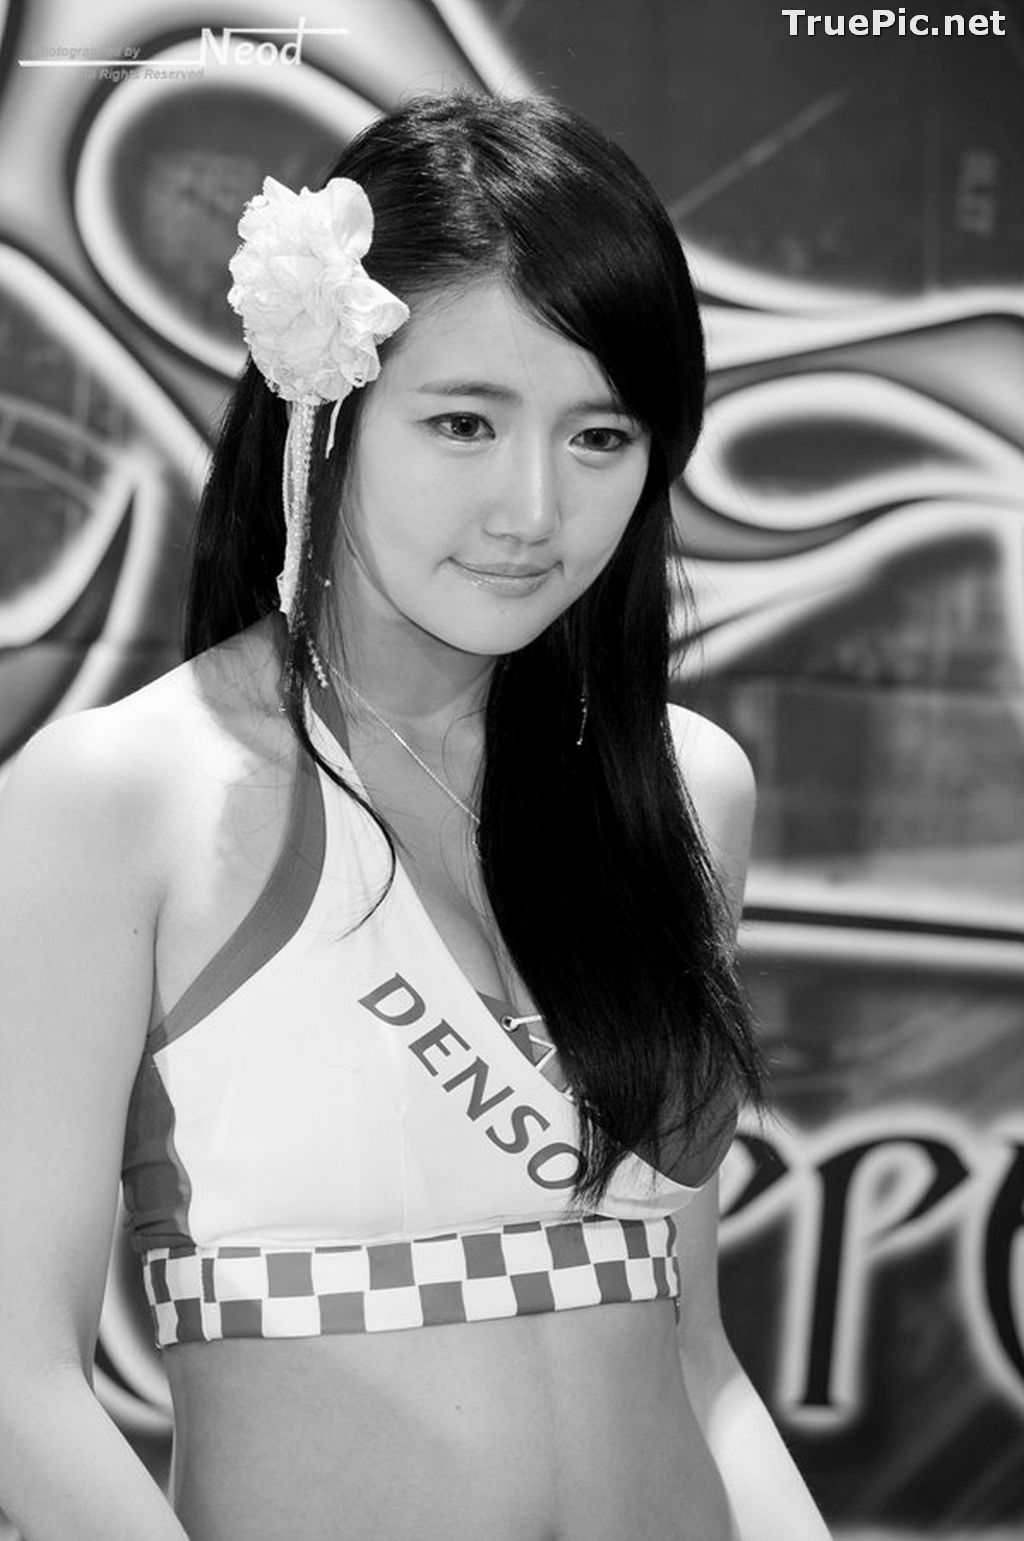 Image Best Beautiful Images Of Korean Racing Queen Han Ga Eun #4 - TruePic.net - Picture-57